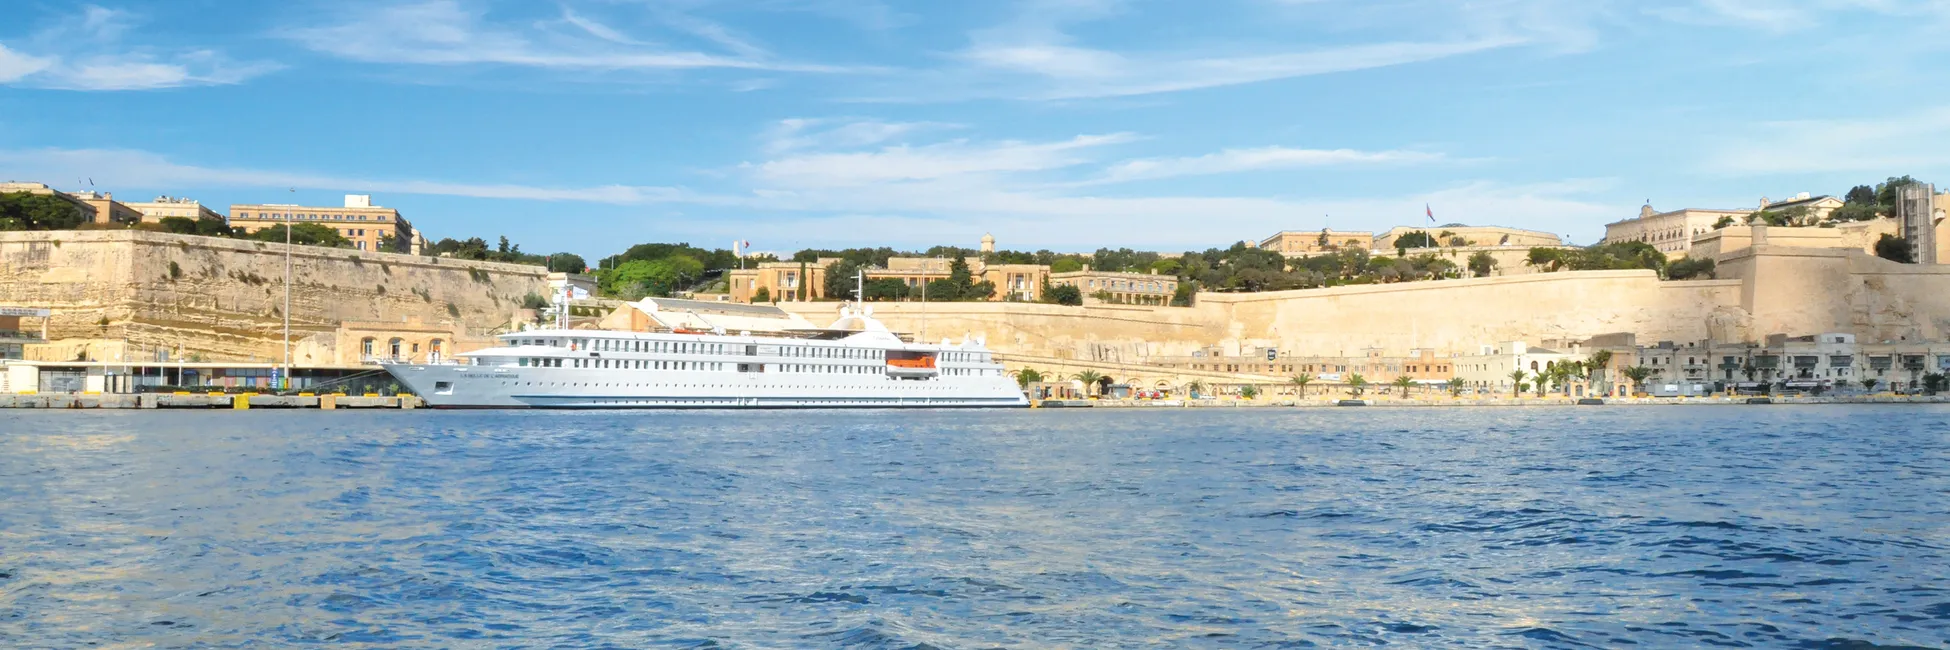 La Belle de l'Adriatique au port de Malte 